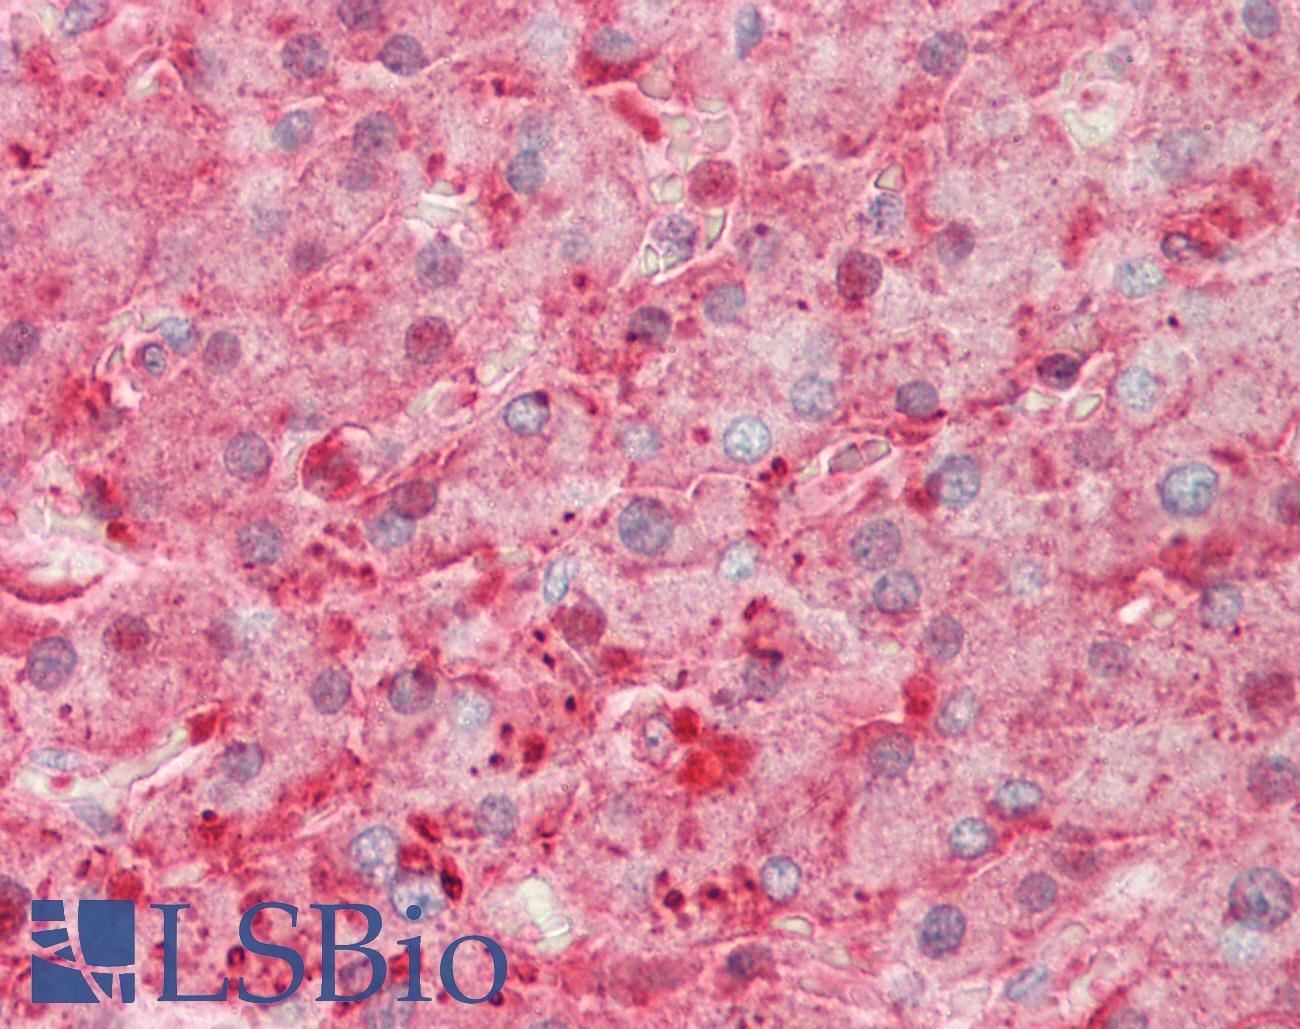 SERPINA1 / Alpha 1 Antitrypsin Antibody - Human Liver: Formalin-Fixed, Paraffin-Embedded (FFPE)